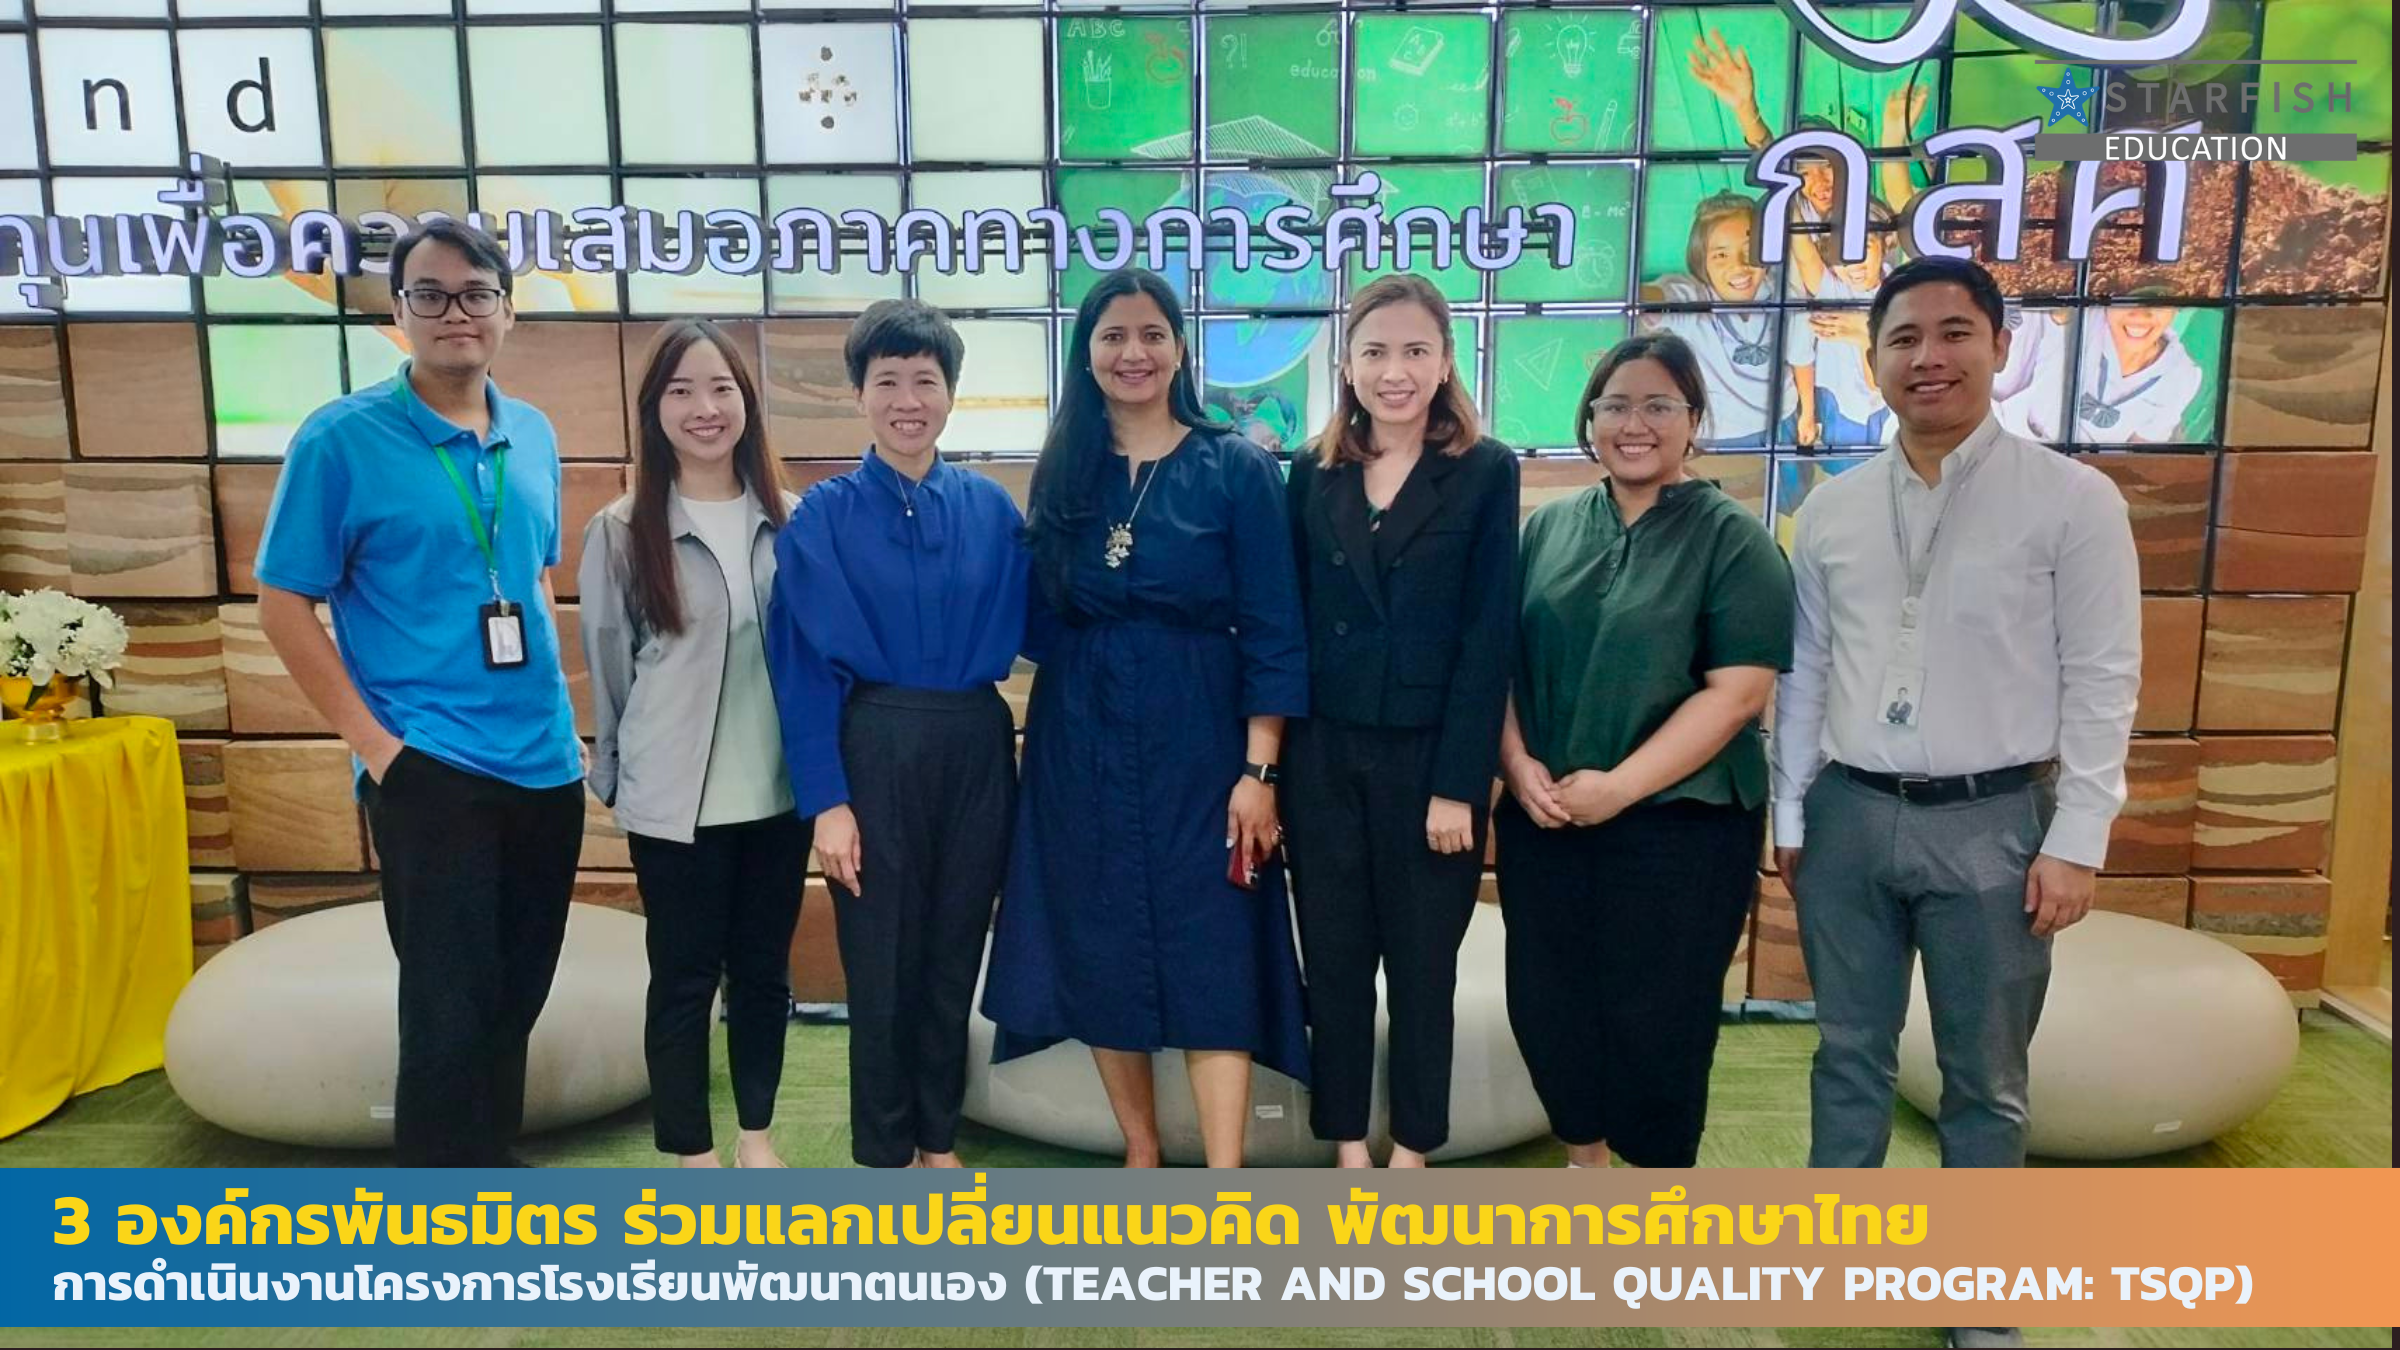 3 องค์กรพันธมิตร ร่วมแลกเปลี่ยนแนวคิด พัฒนาการศึกษาไทย